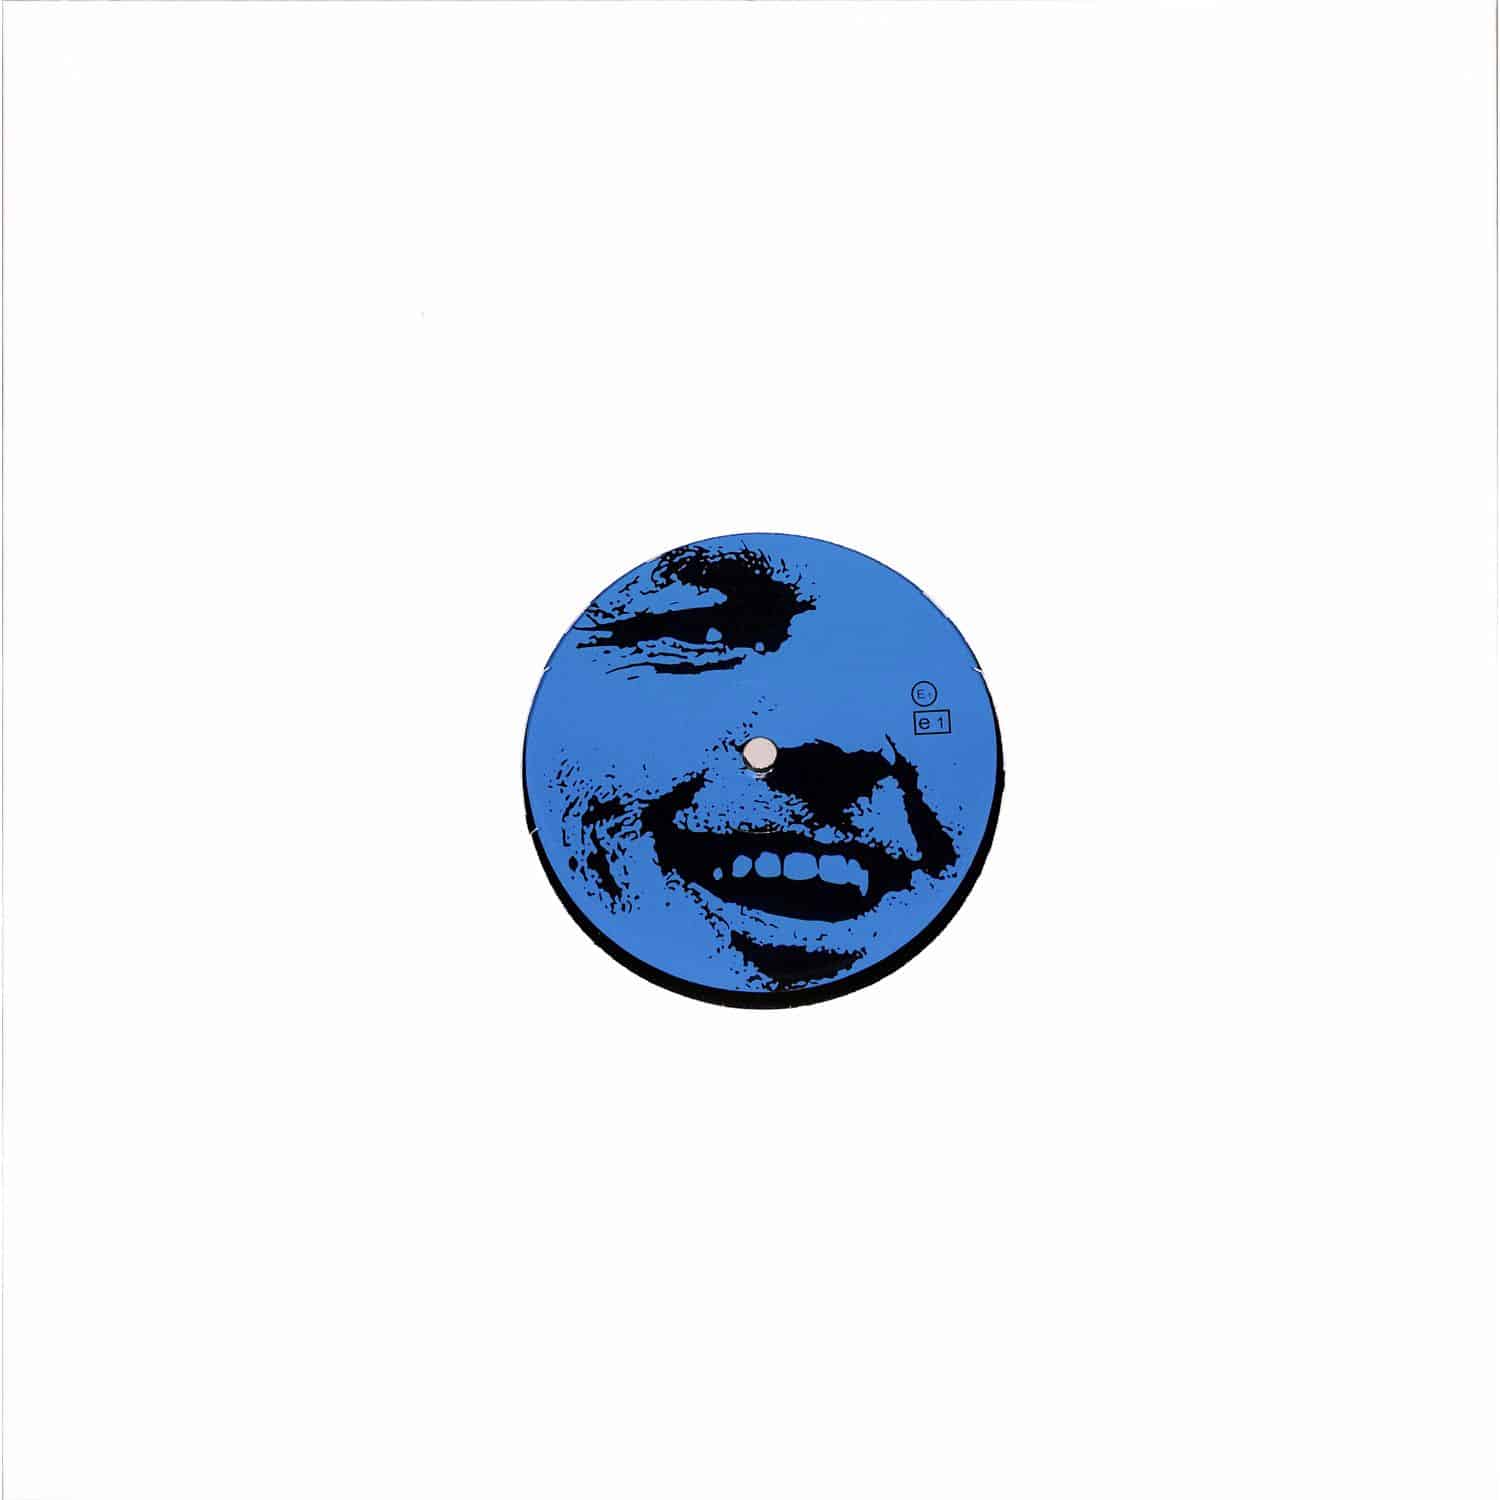 Pessimist - BLUE 09